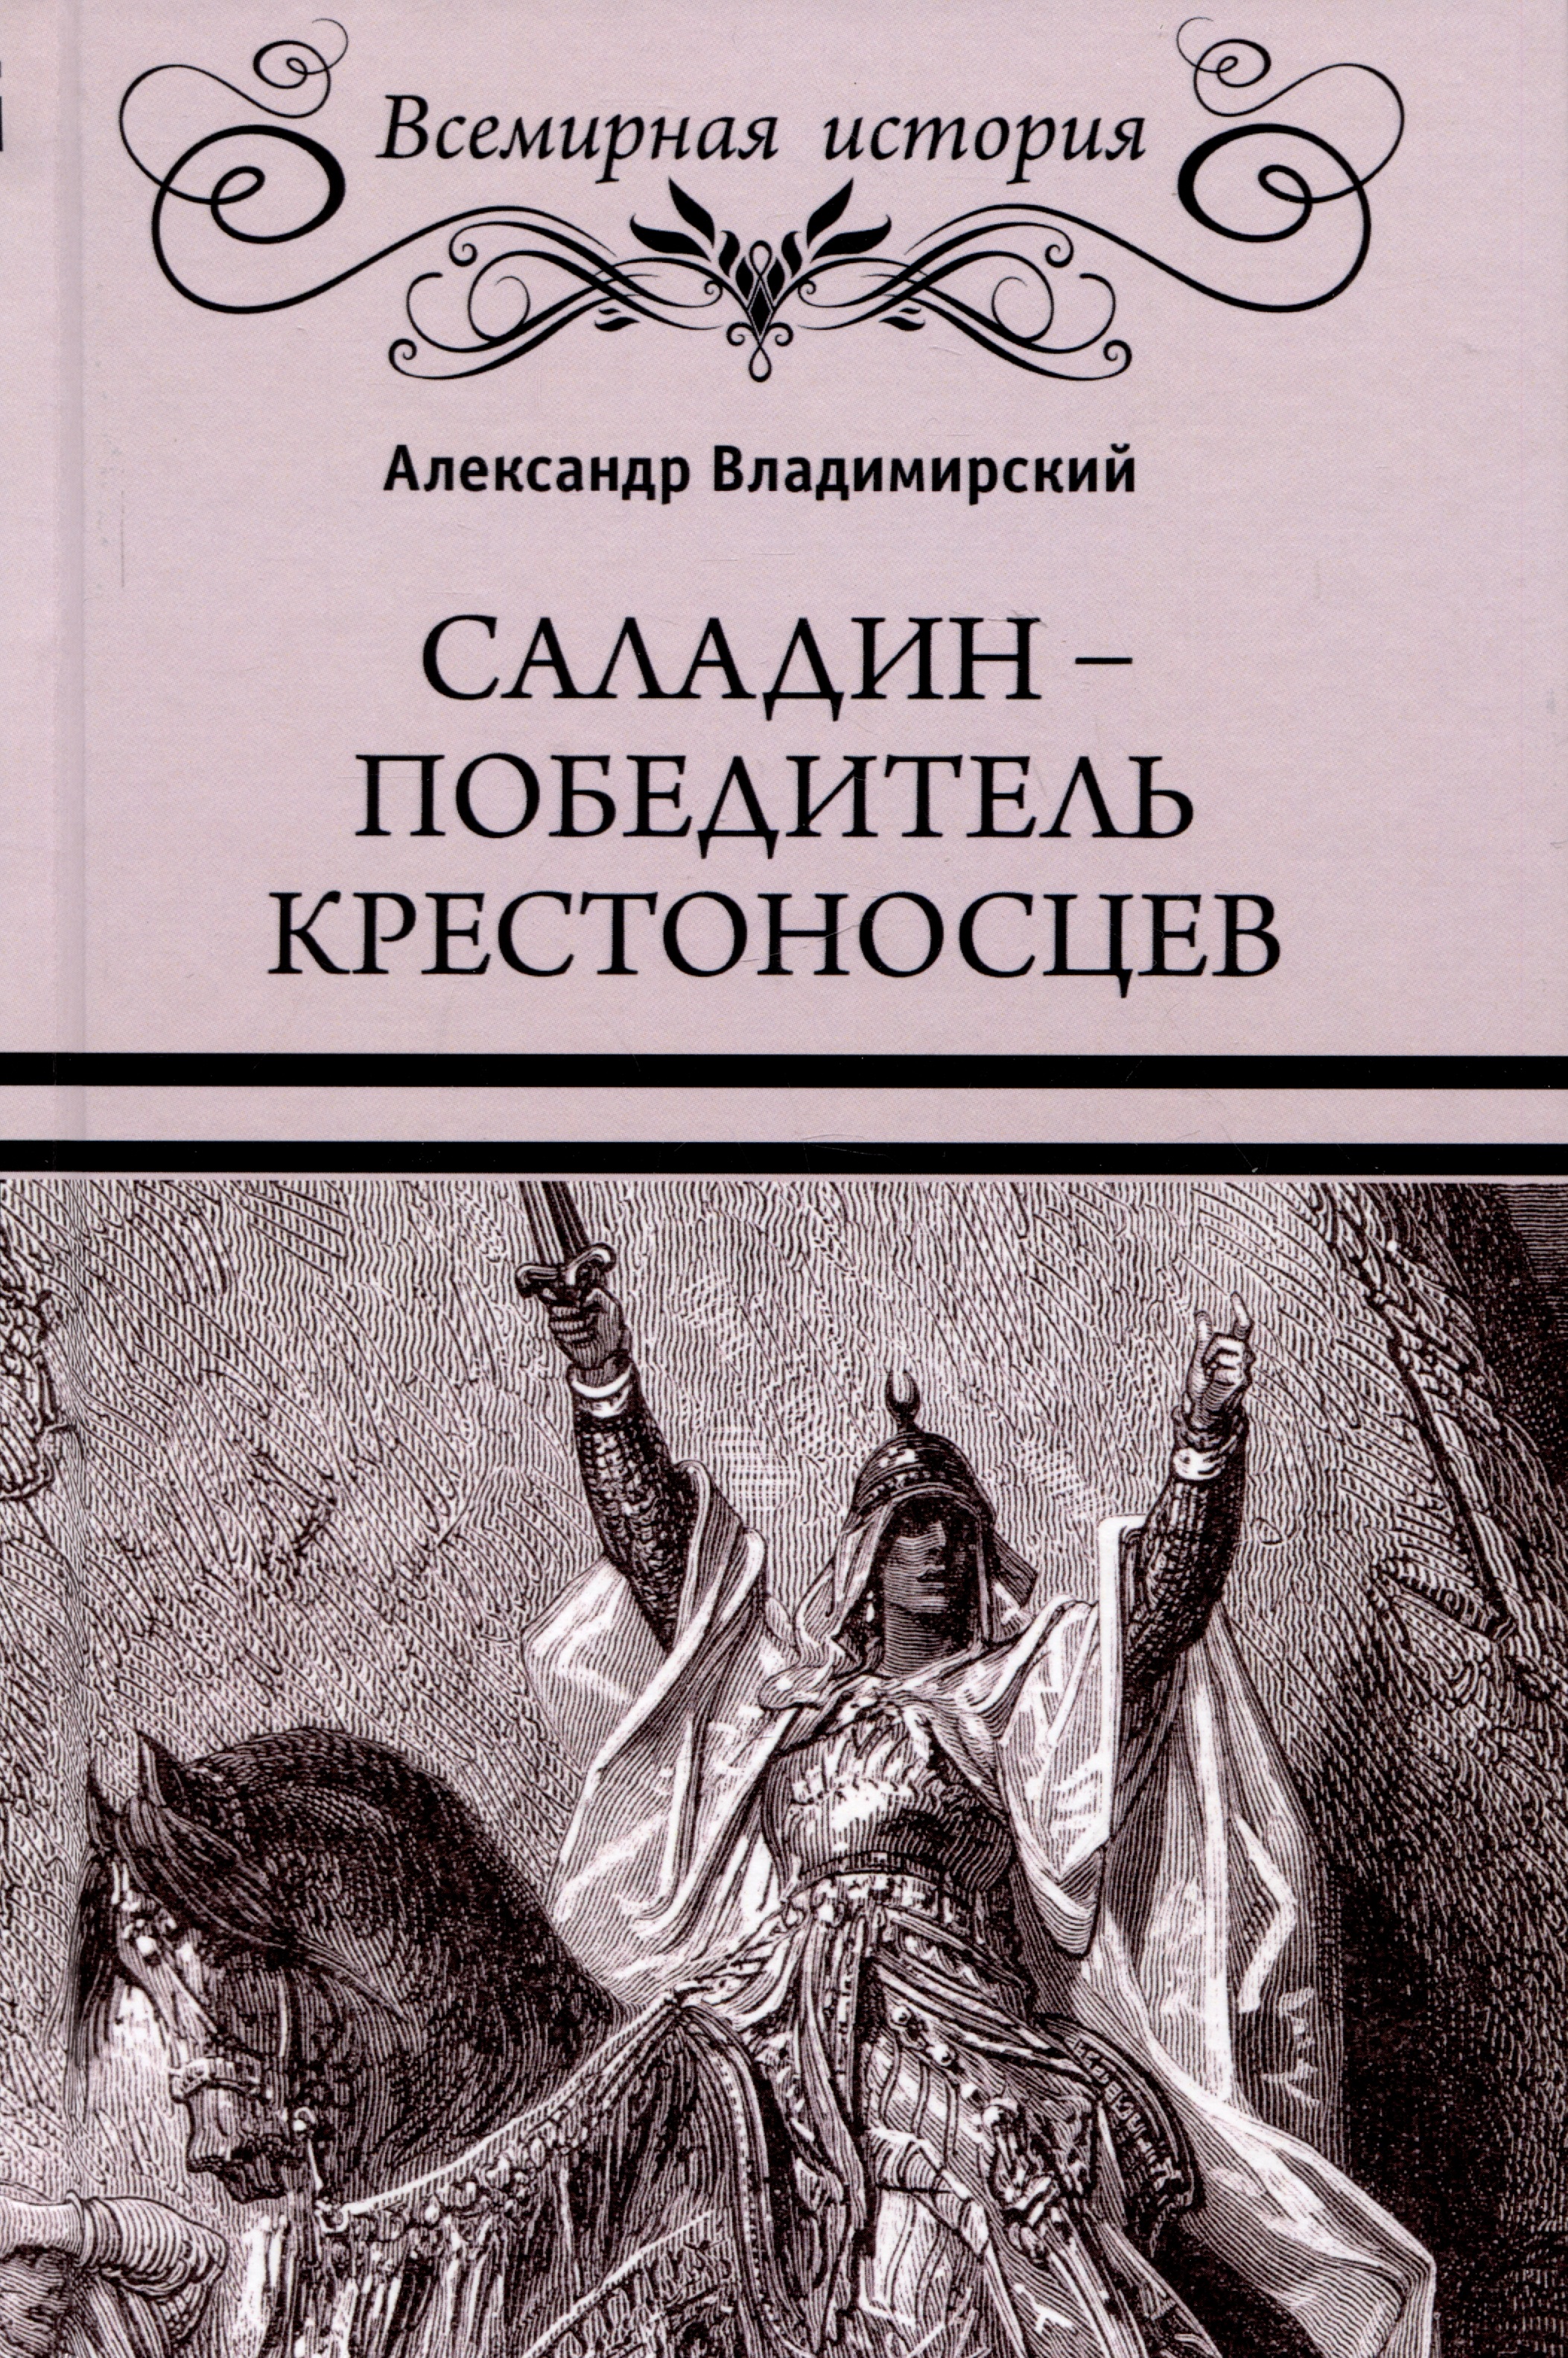 Владимирский Александр Владимирович Саладин - победитель крестоносцев